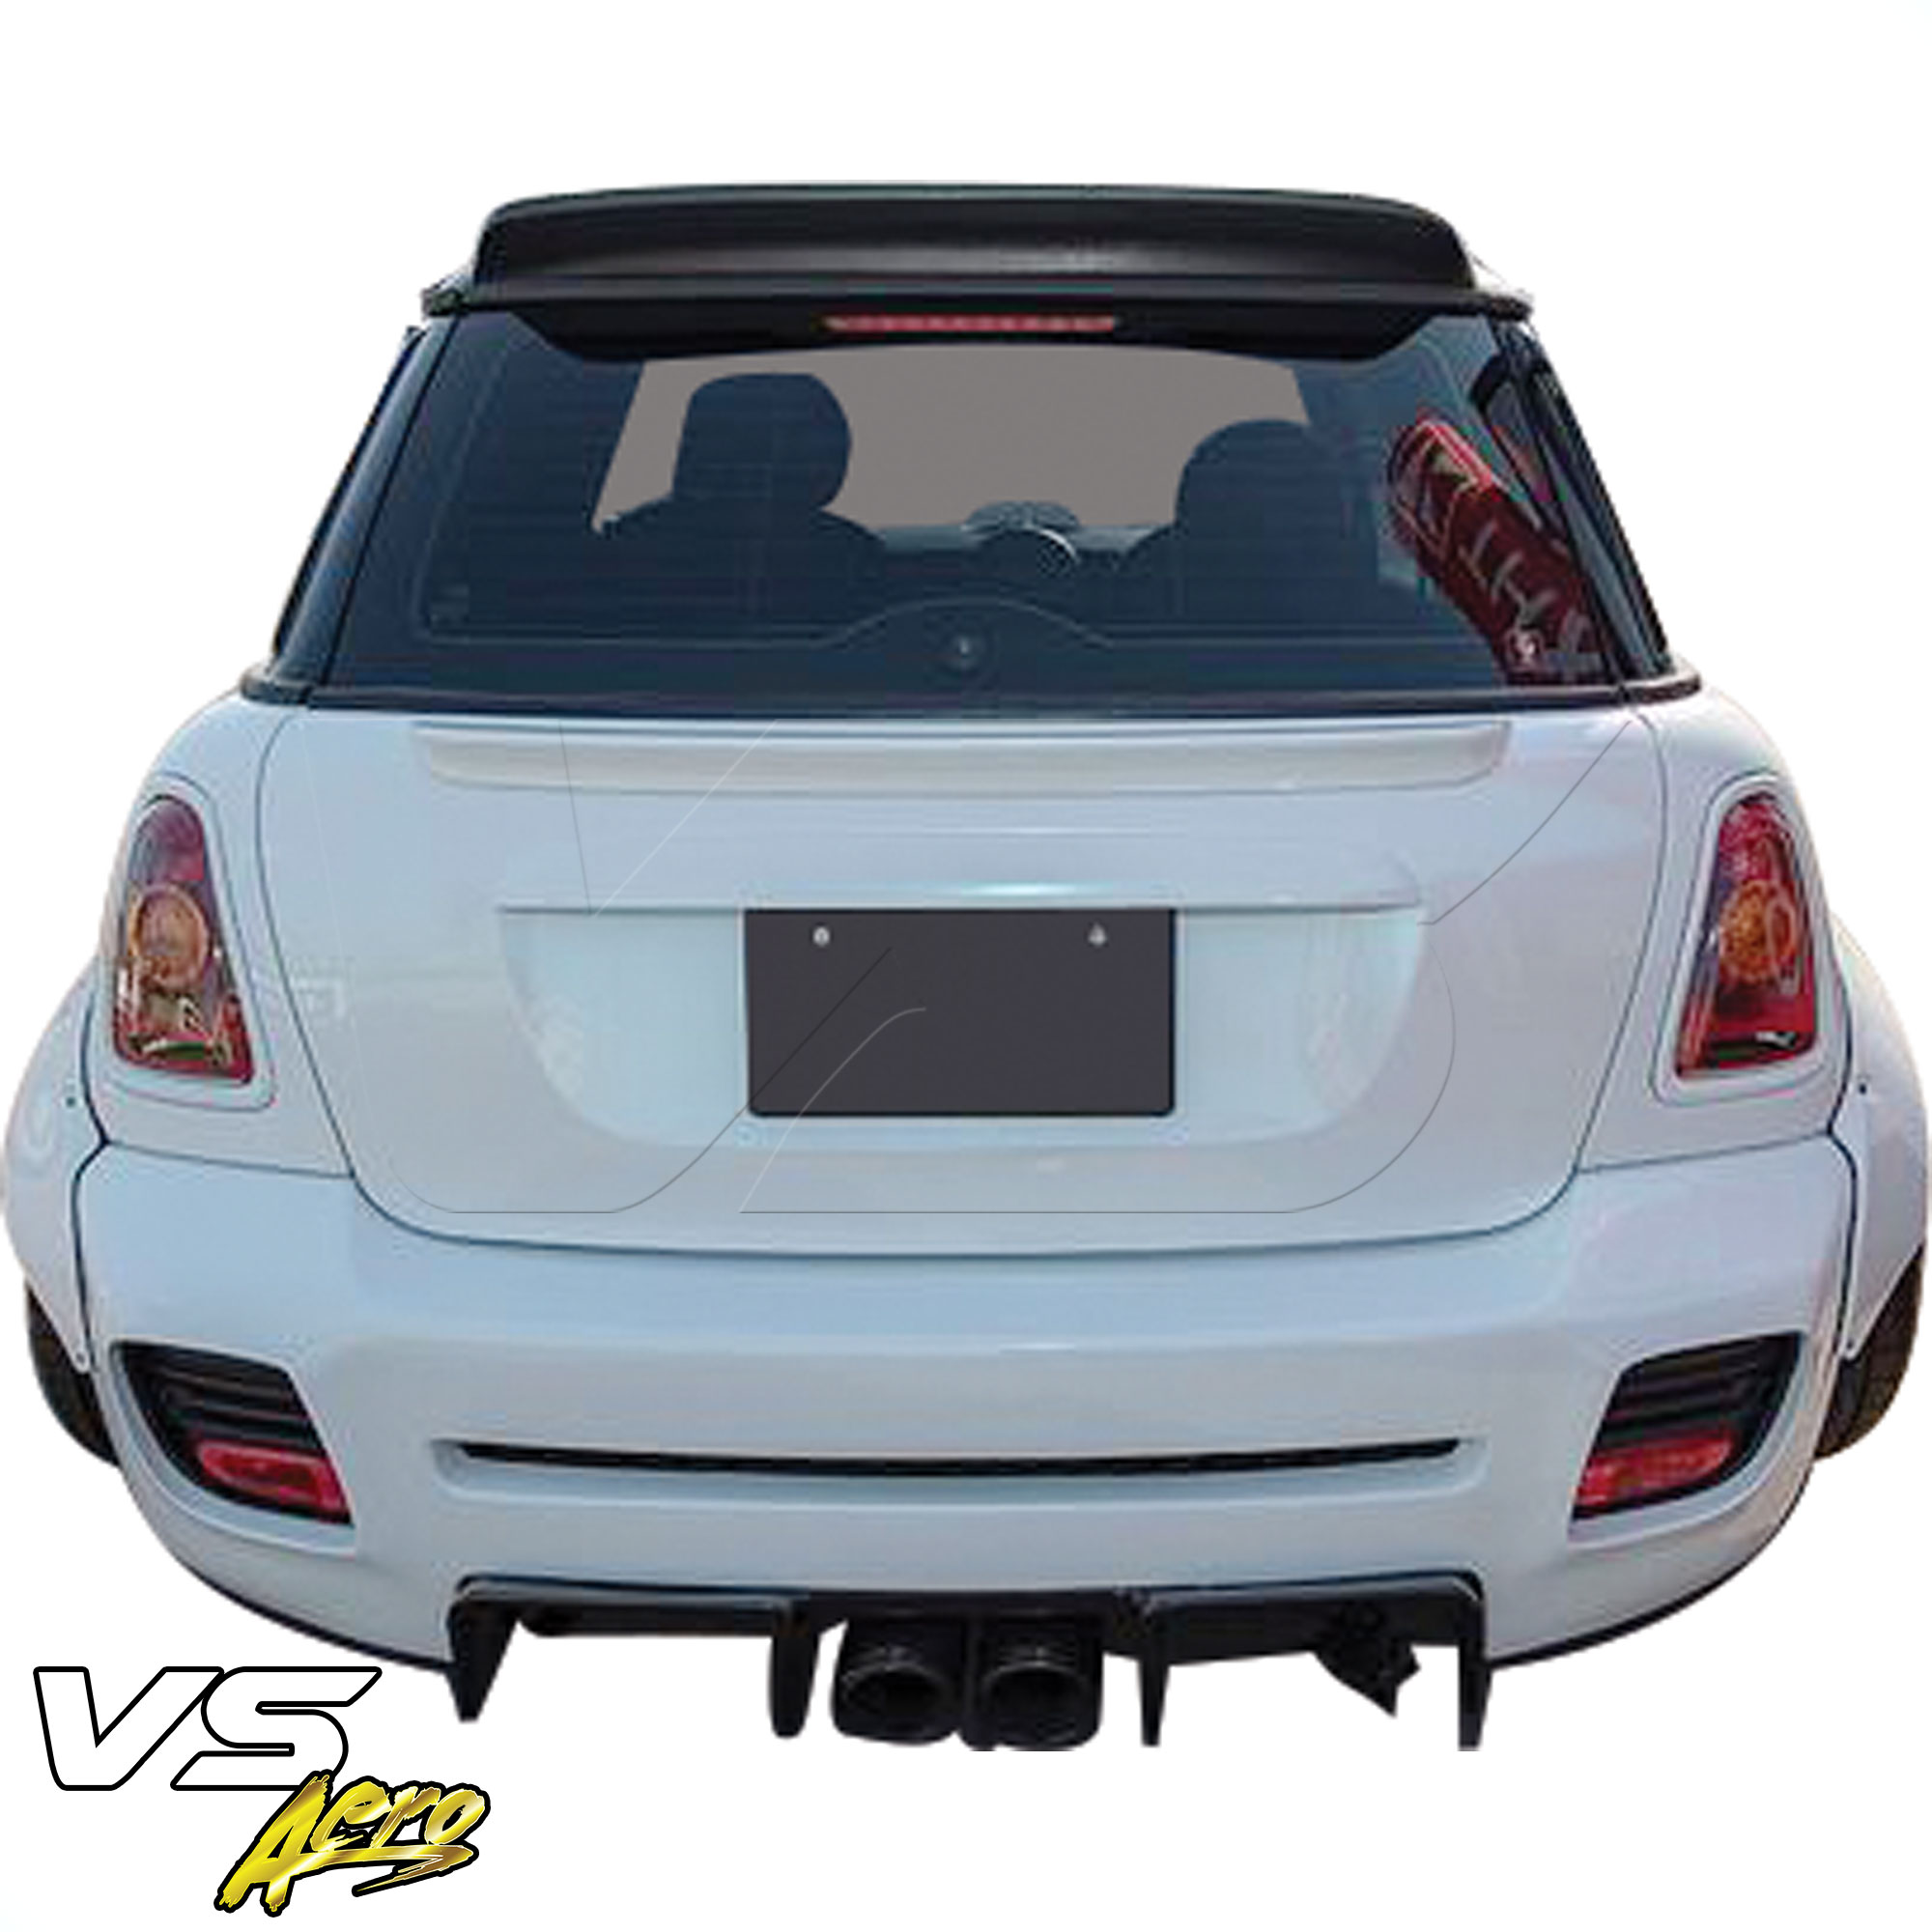 VSaero FRP LBPE Wide Body Rear Bumper 2pc > Mini Cooper R56 R57 2007-2013 - Image 2